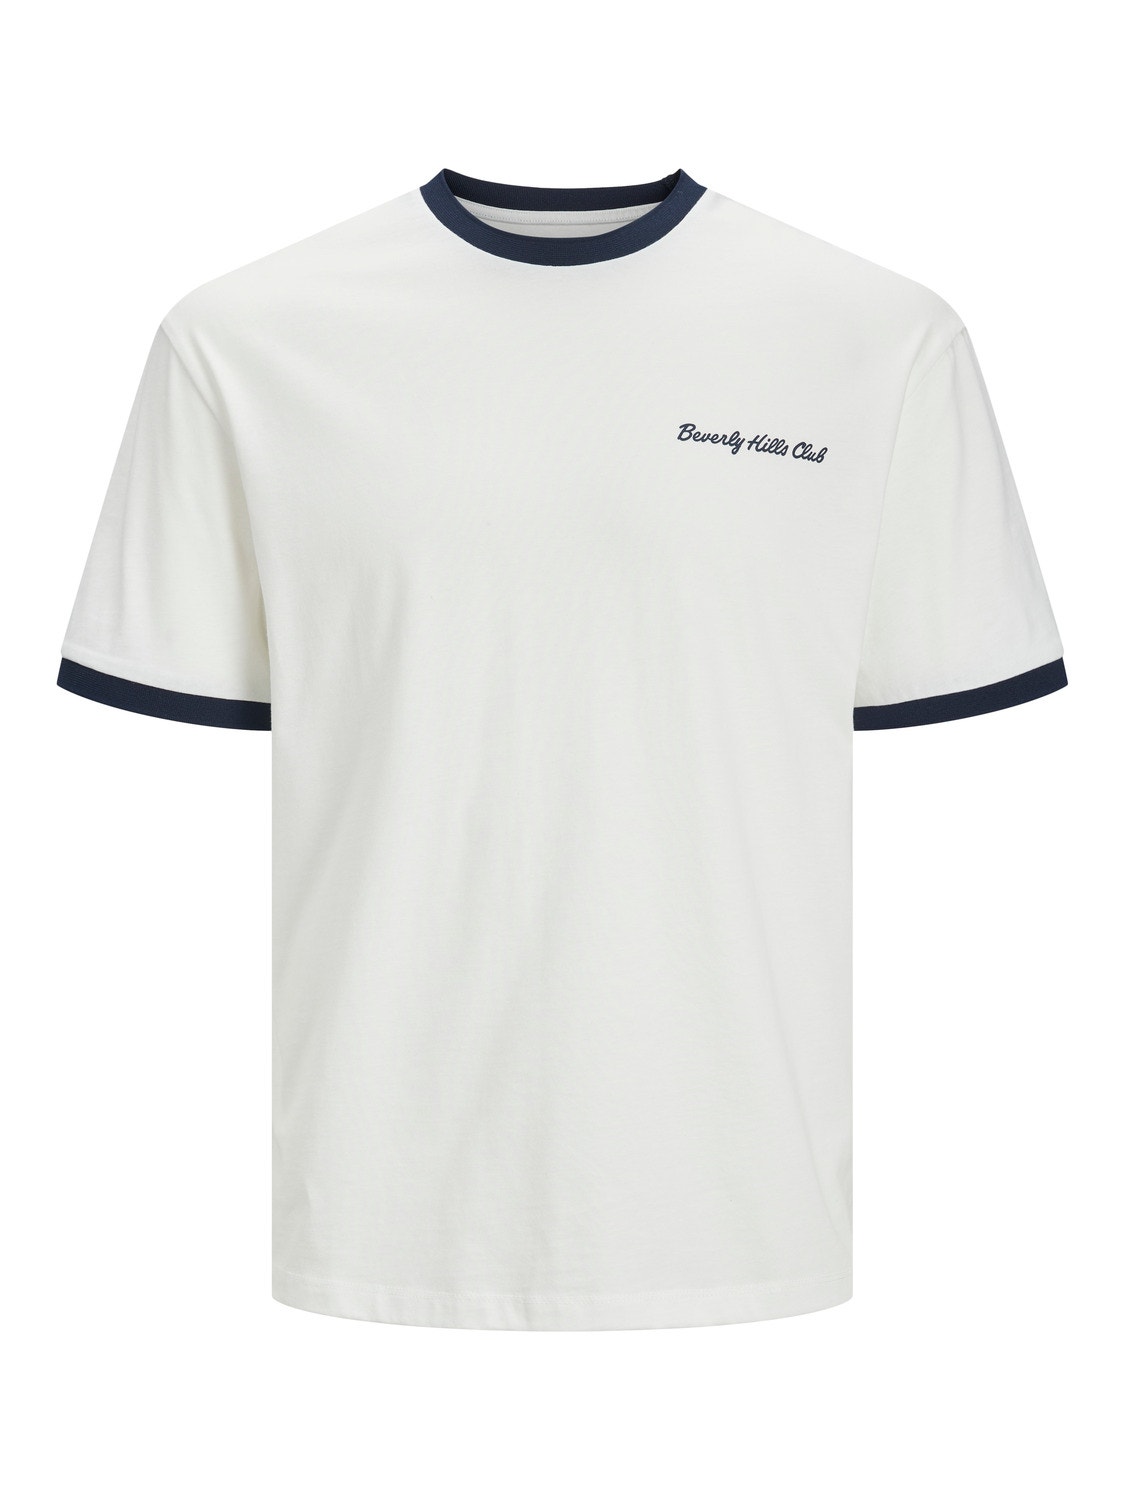 Jack & Jones Printed Crew neck T-shirt -Cloud Dancer - 12237453